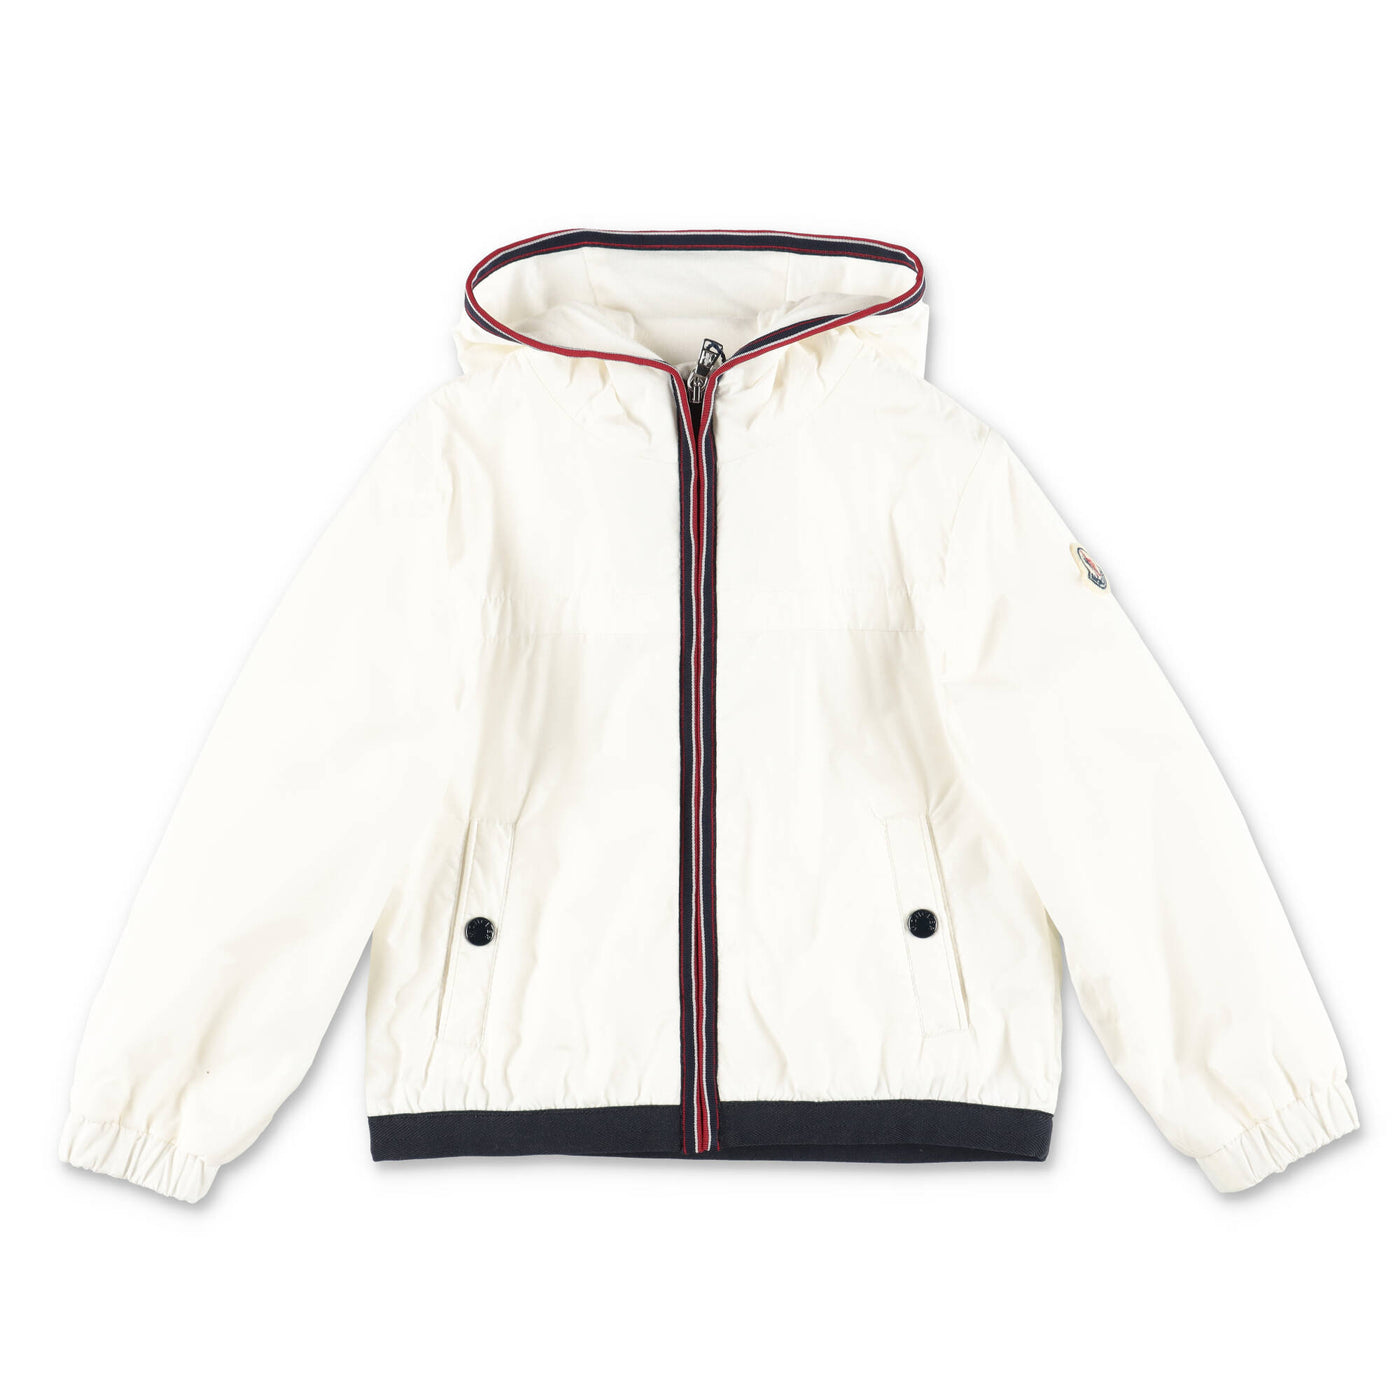 ANTON white nylon baby boy MONCLER jacket with hood